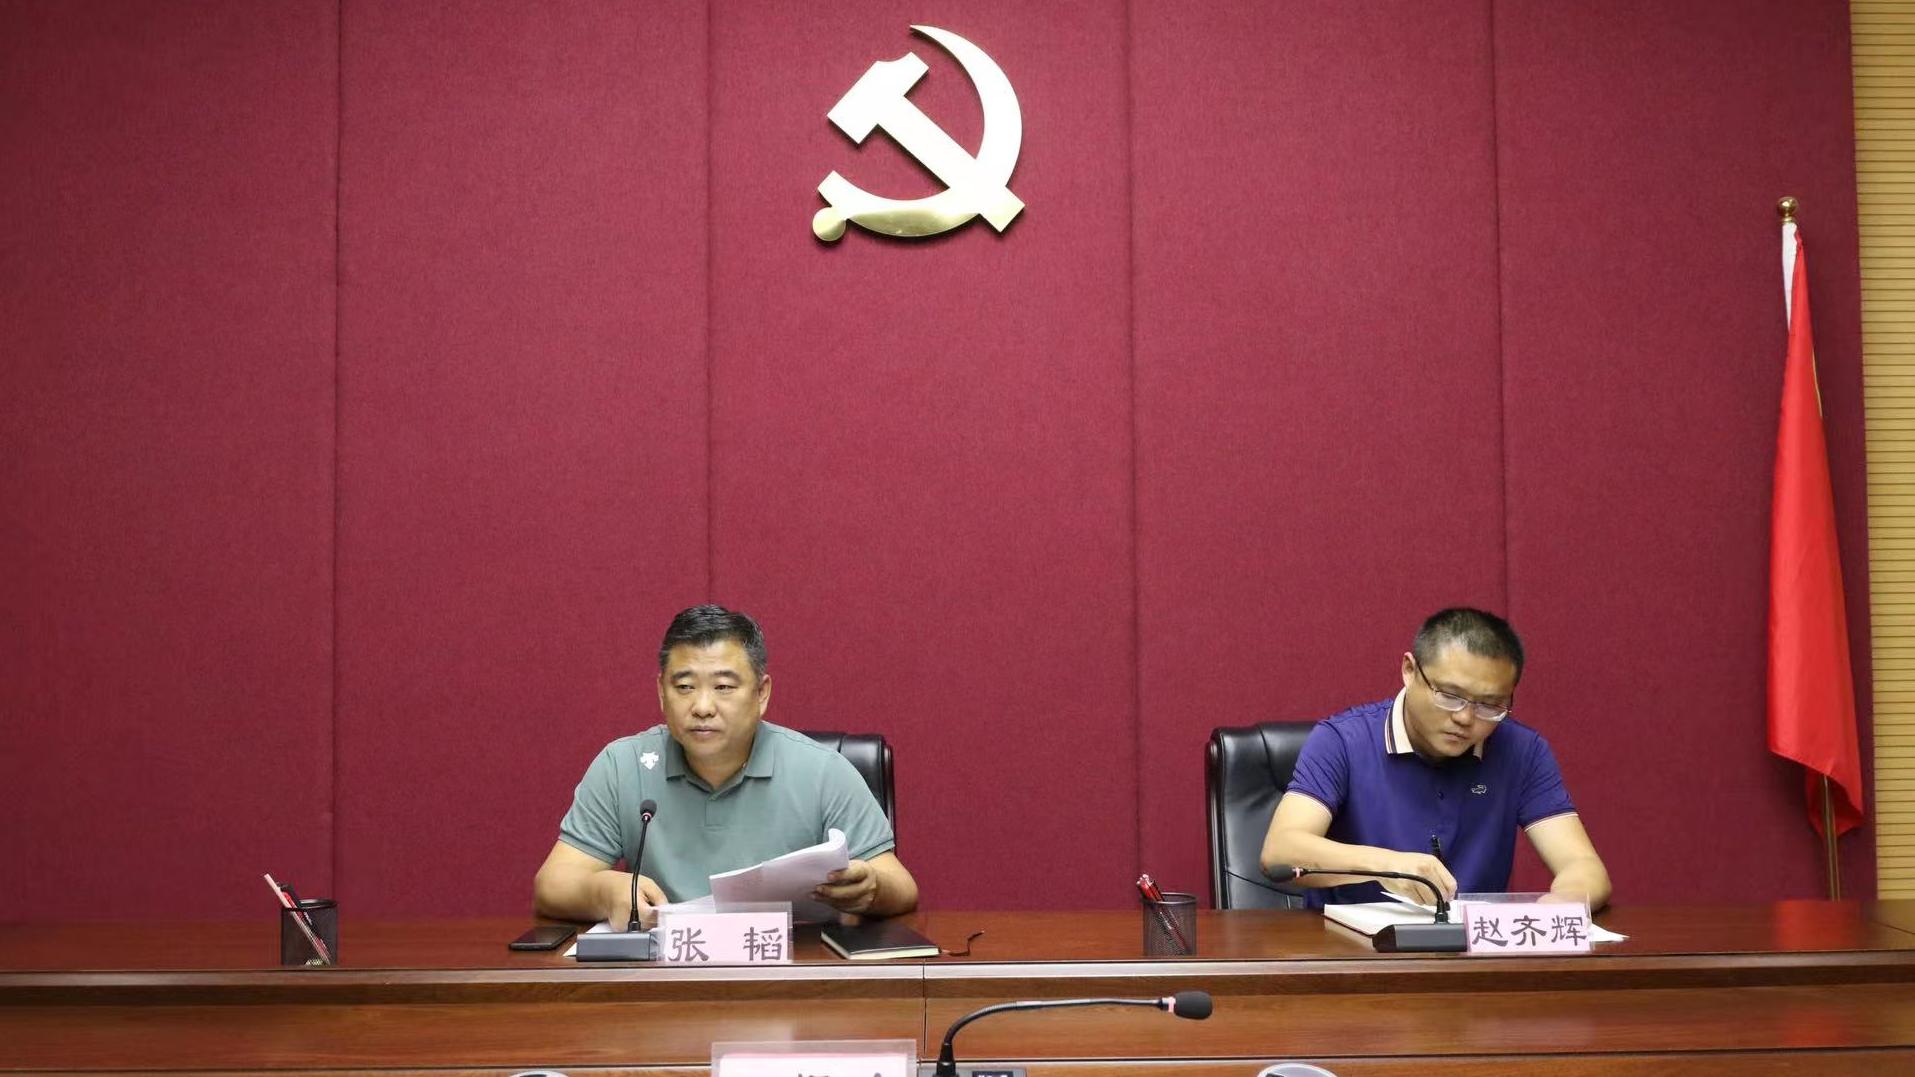 贵阳铁路运输法院召开党组扩大会议